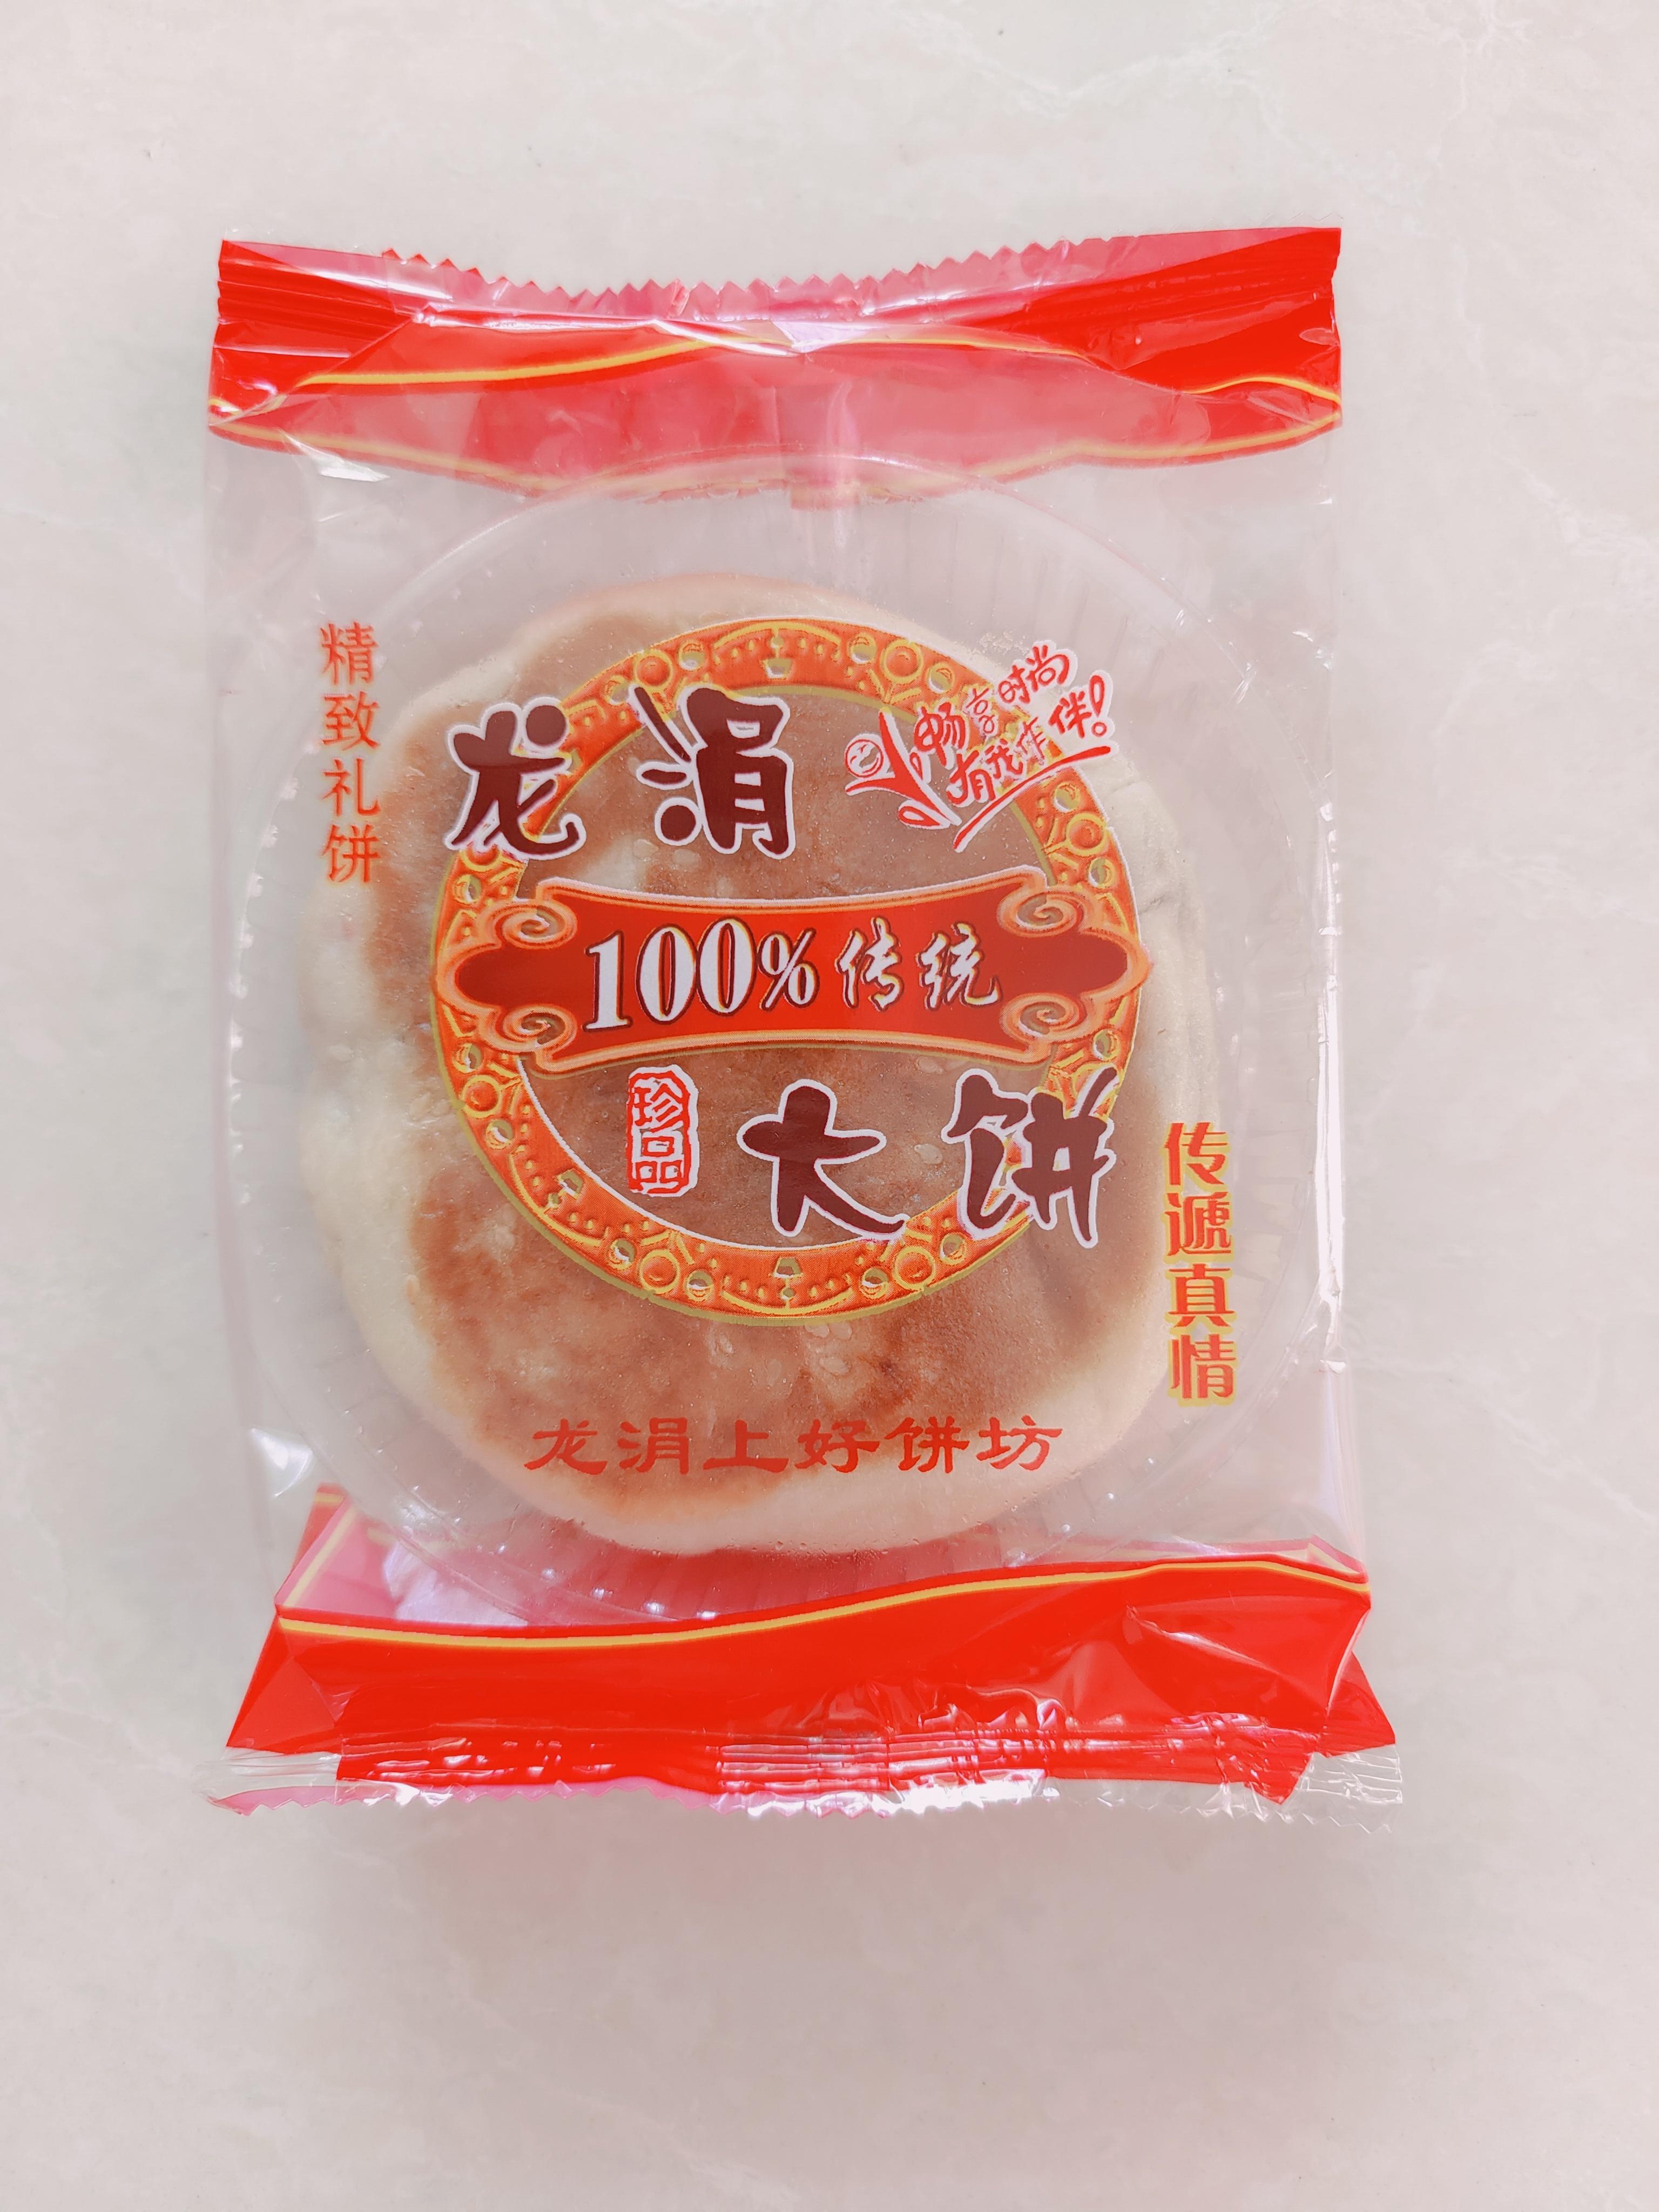 【美食推荐】龙涓大饼:安溪传统小作坊手艺月饼,有家的味道!